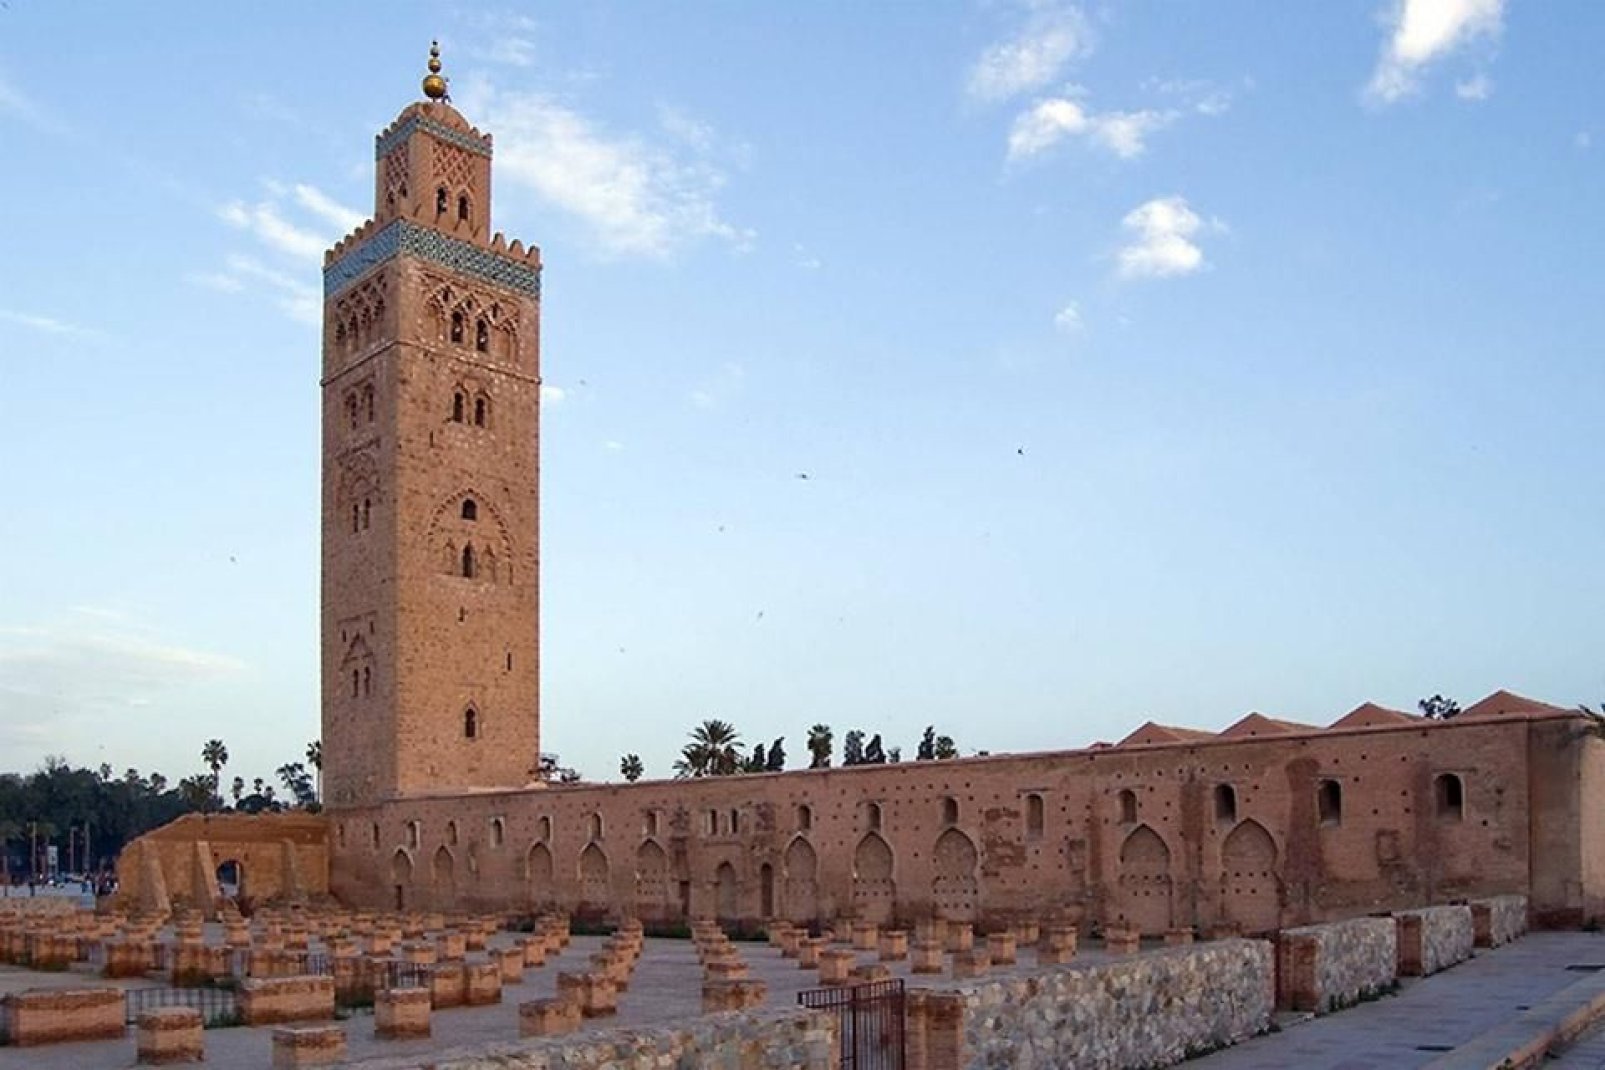 Trotz der bewusst bescheidenen Gestaltung der Moschee handelt es sich bei diesem Bauwerk dennoch um ein architektonisches Meisterwerk, das gleichzeitig zu den schönsten Monumenten von ganz Marokko zählt.